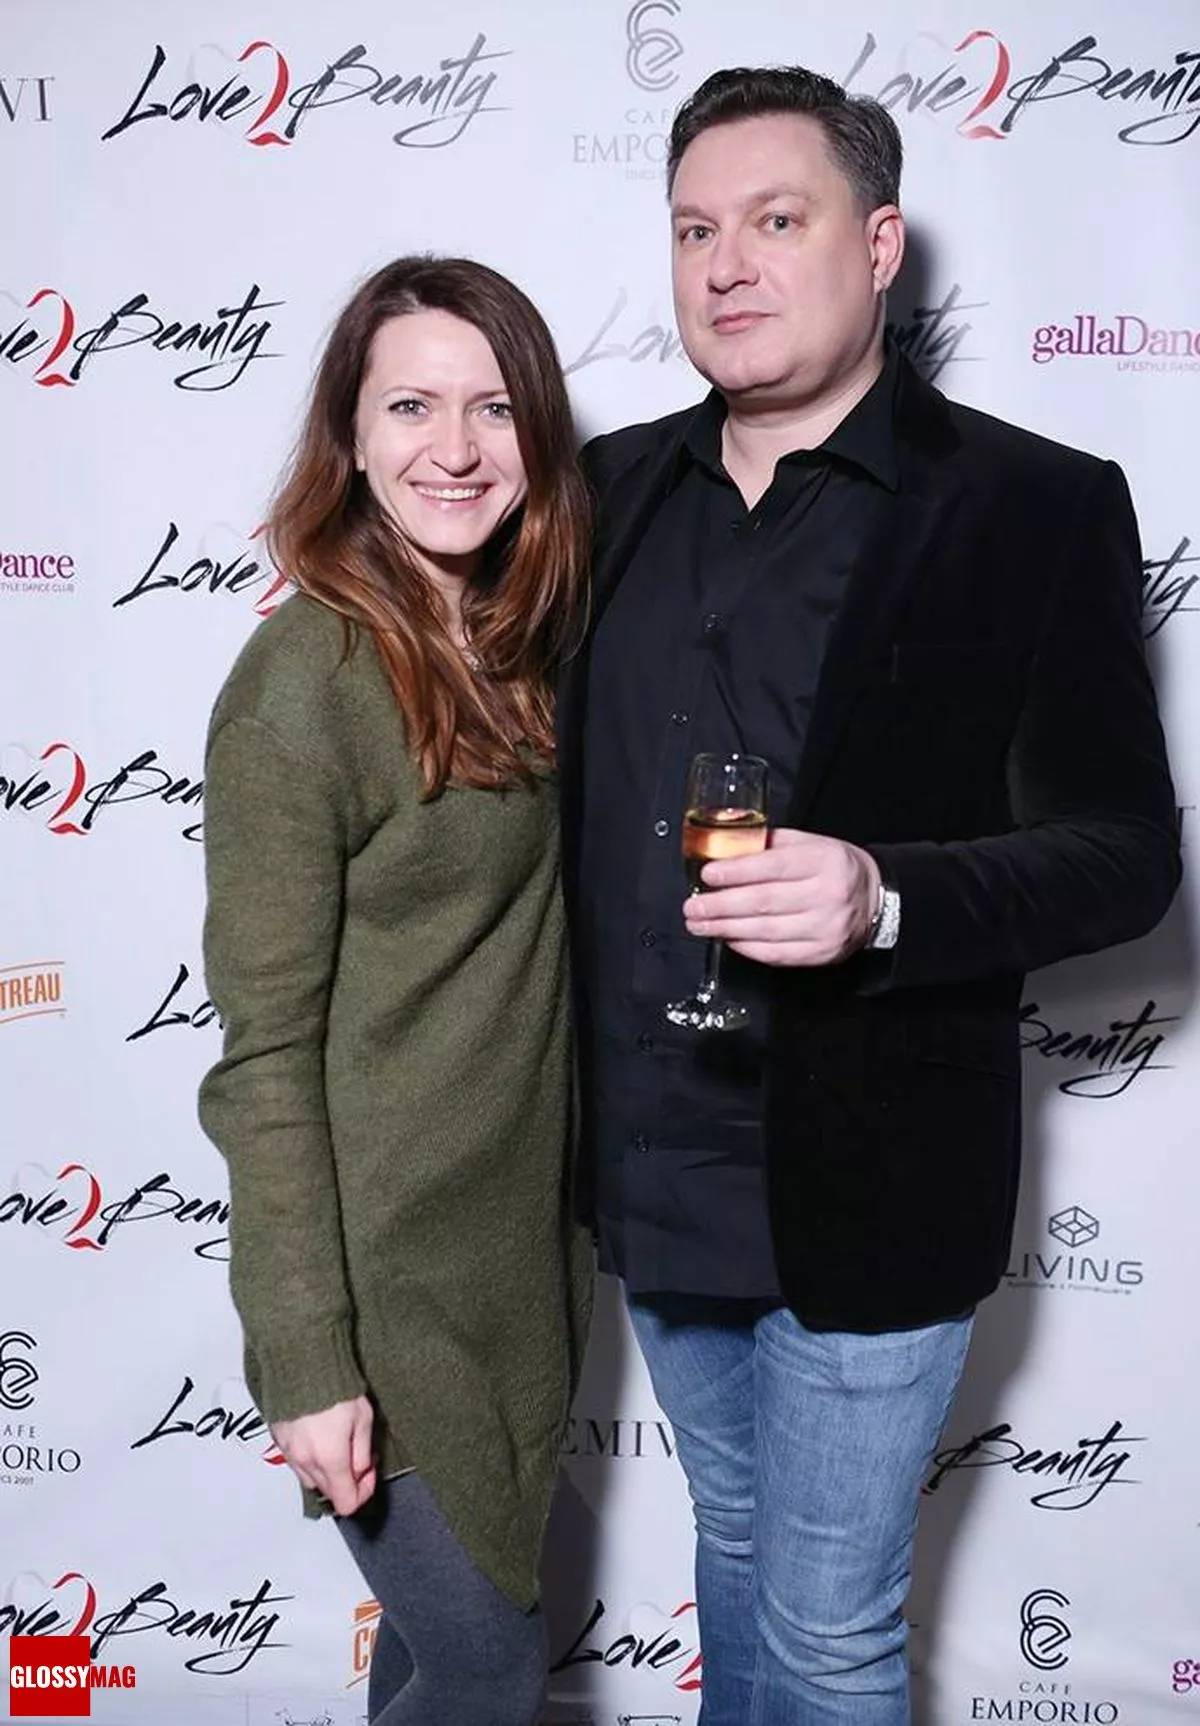 Оксана Корнылива (Единая Европа), Виктор Гостищев — основатель и совладелец Love2Beauty.ru на праздновании 2-летия Love2Beauty.ru в EMPORIO CAFE, 20 ноября 2014 г.